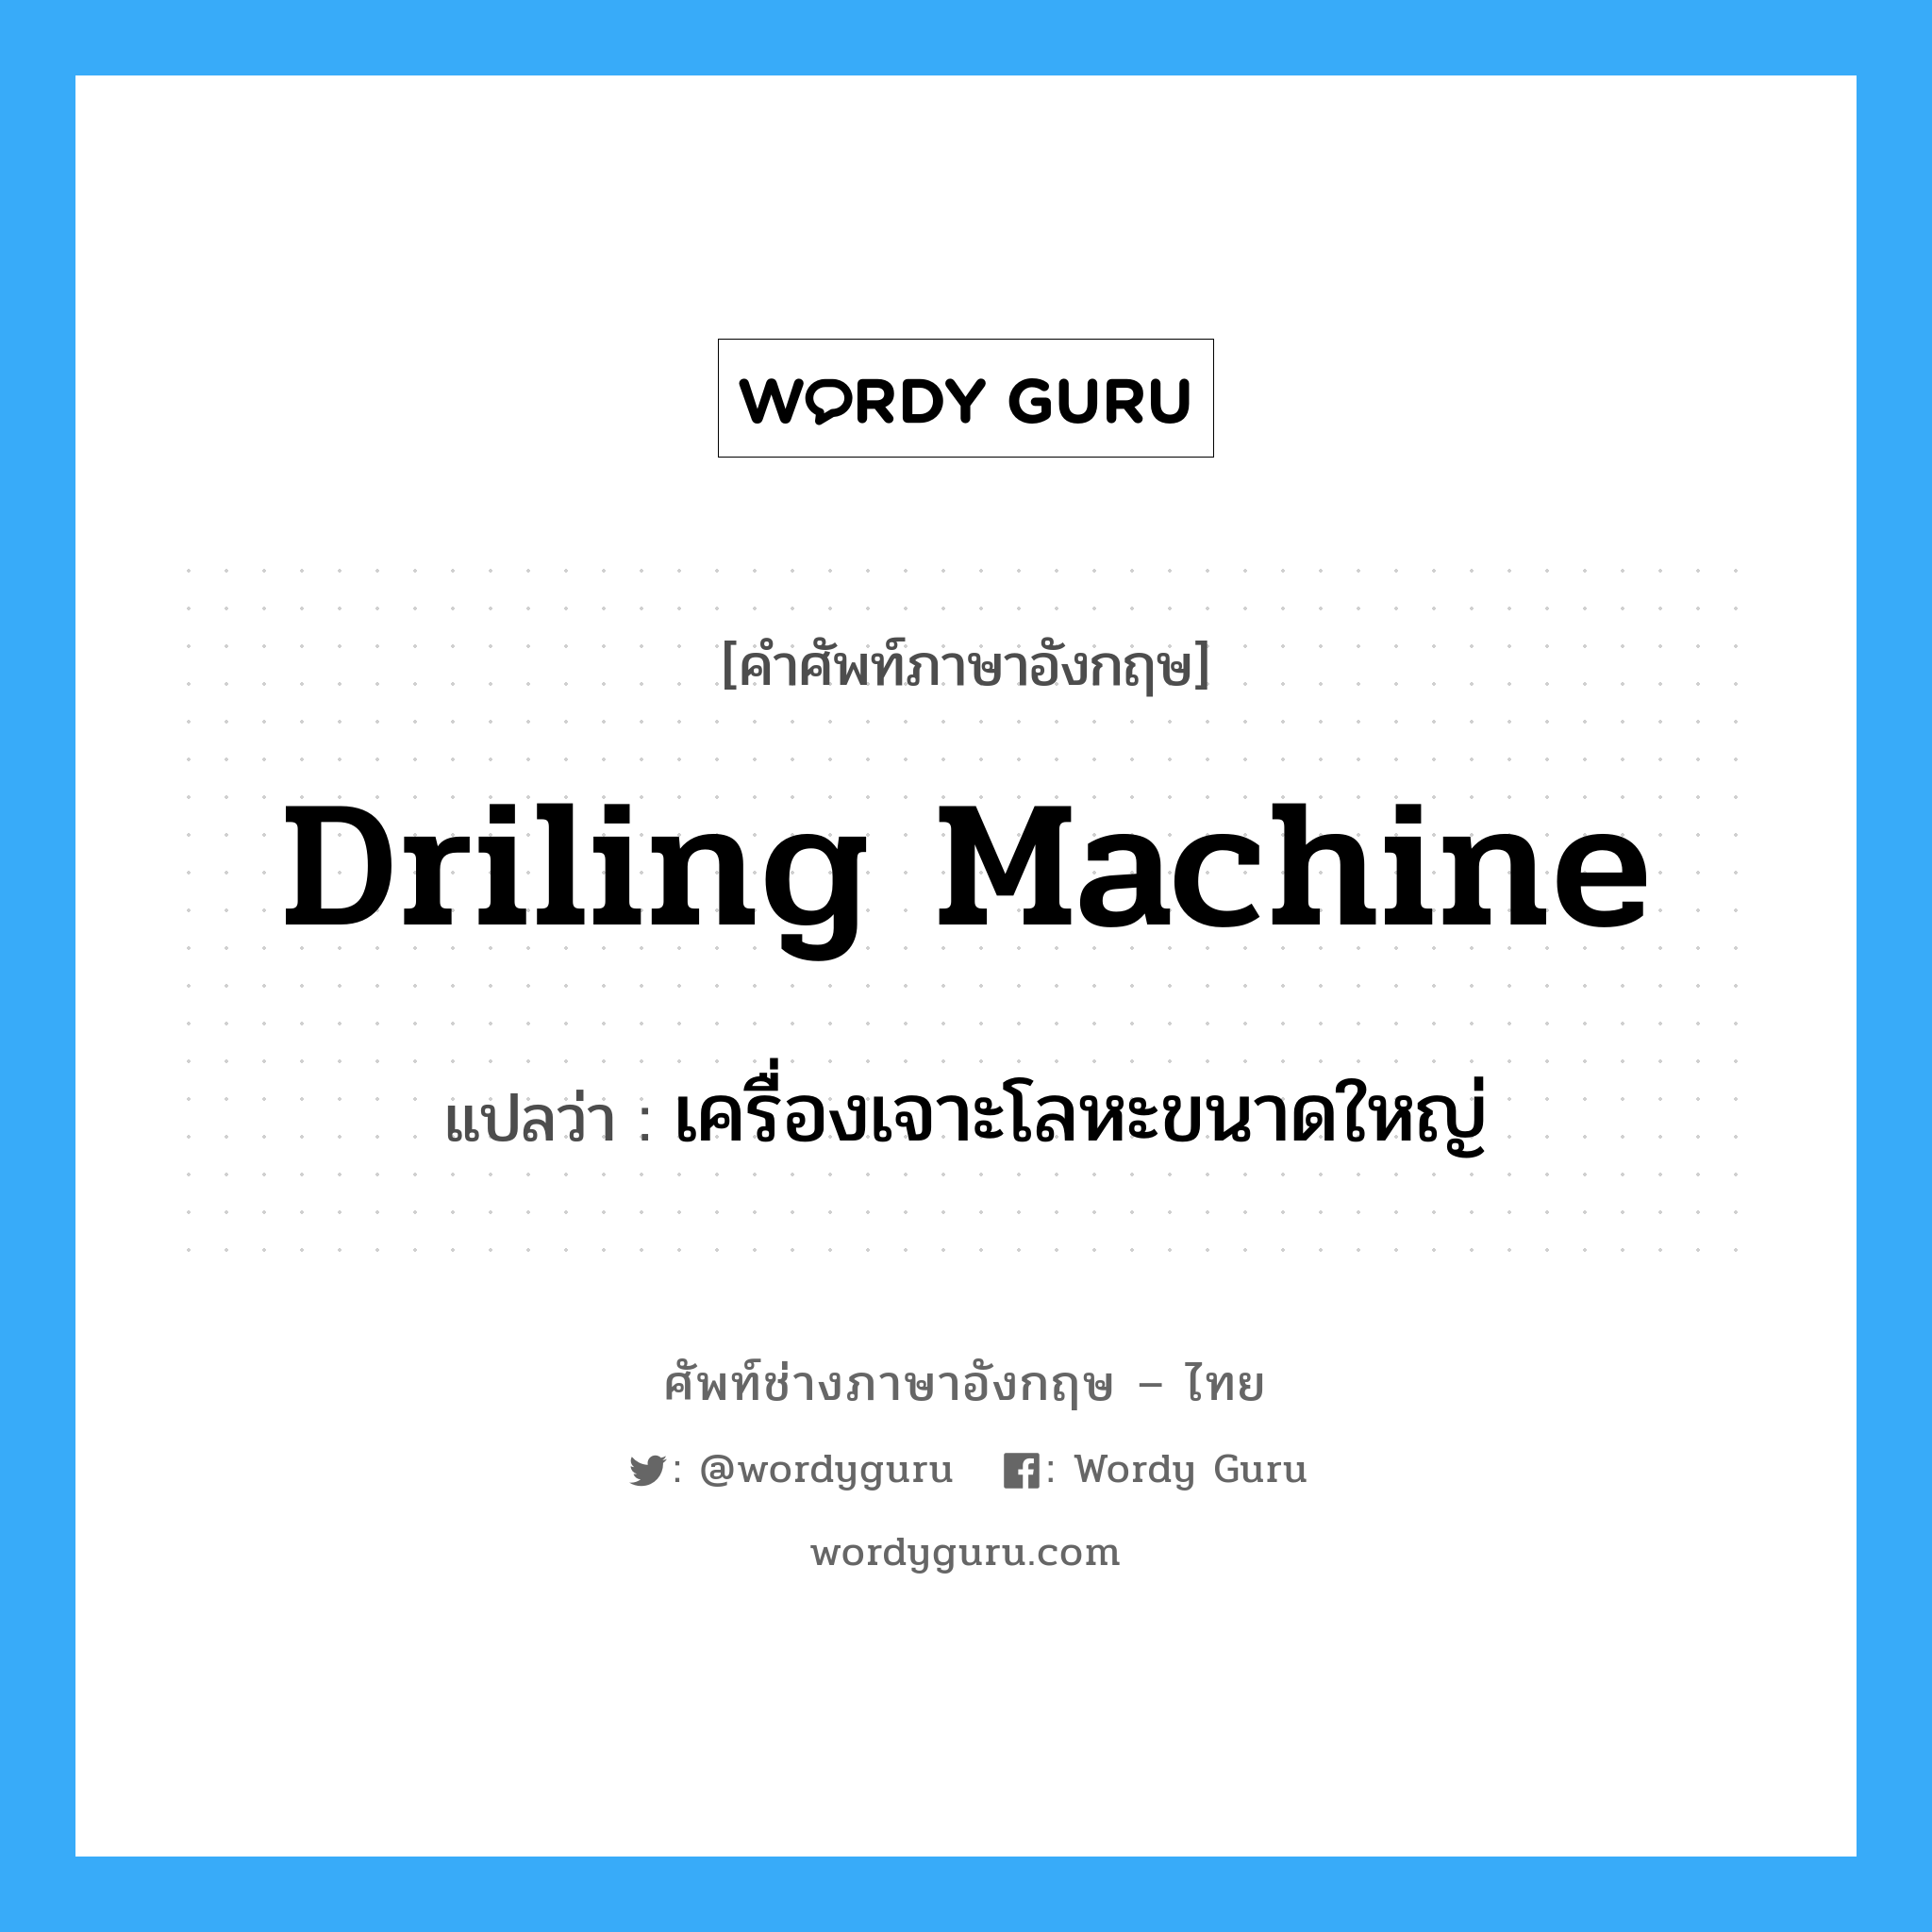 driling machine แปลว่า?, คำศัพท์ช่างภาษาอังกฤษ - ไทย driling machine คำศัพท์ภาษาอังกฤษ driling machine แปลว่า เครื่องเจาะโลหะขนาดใหญ่